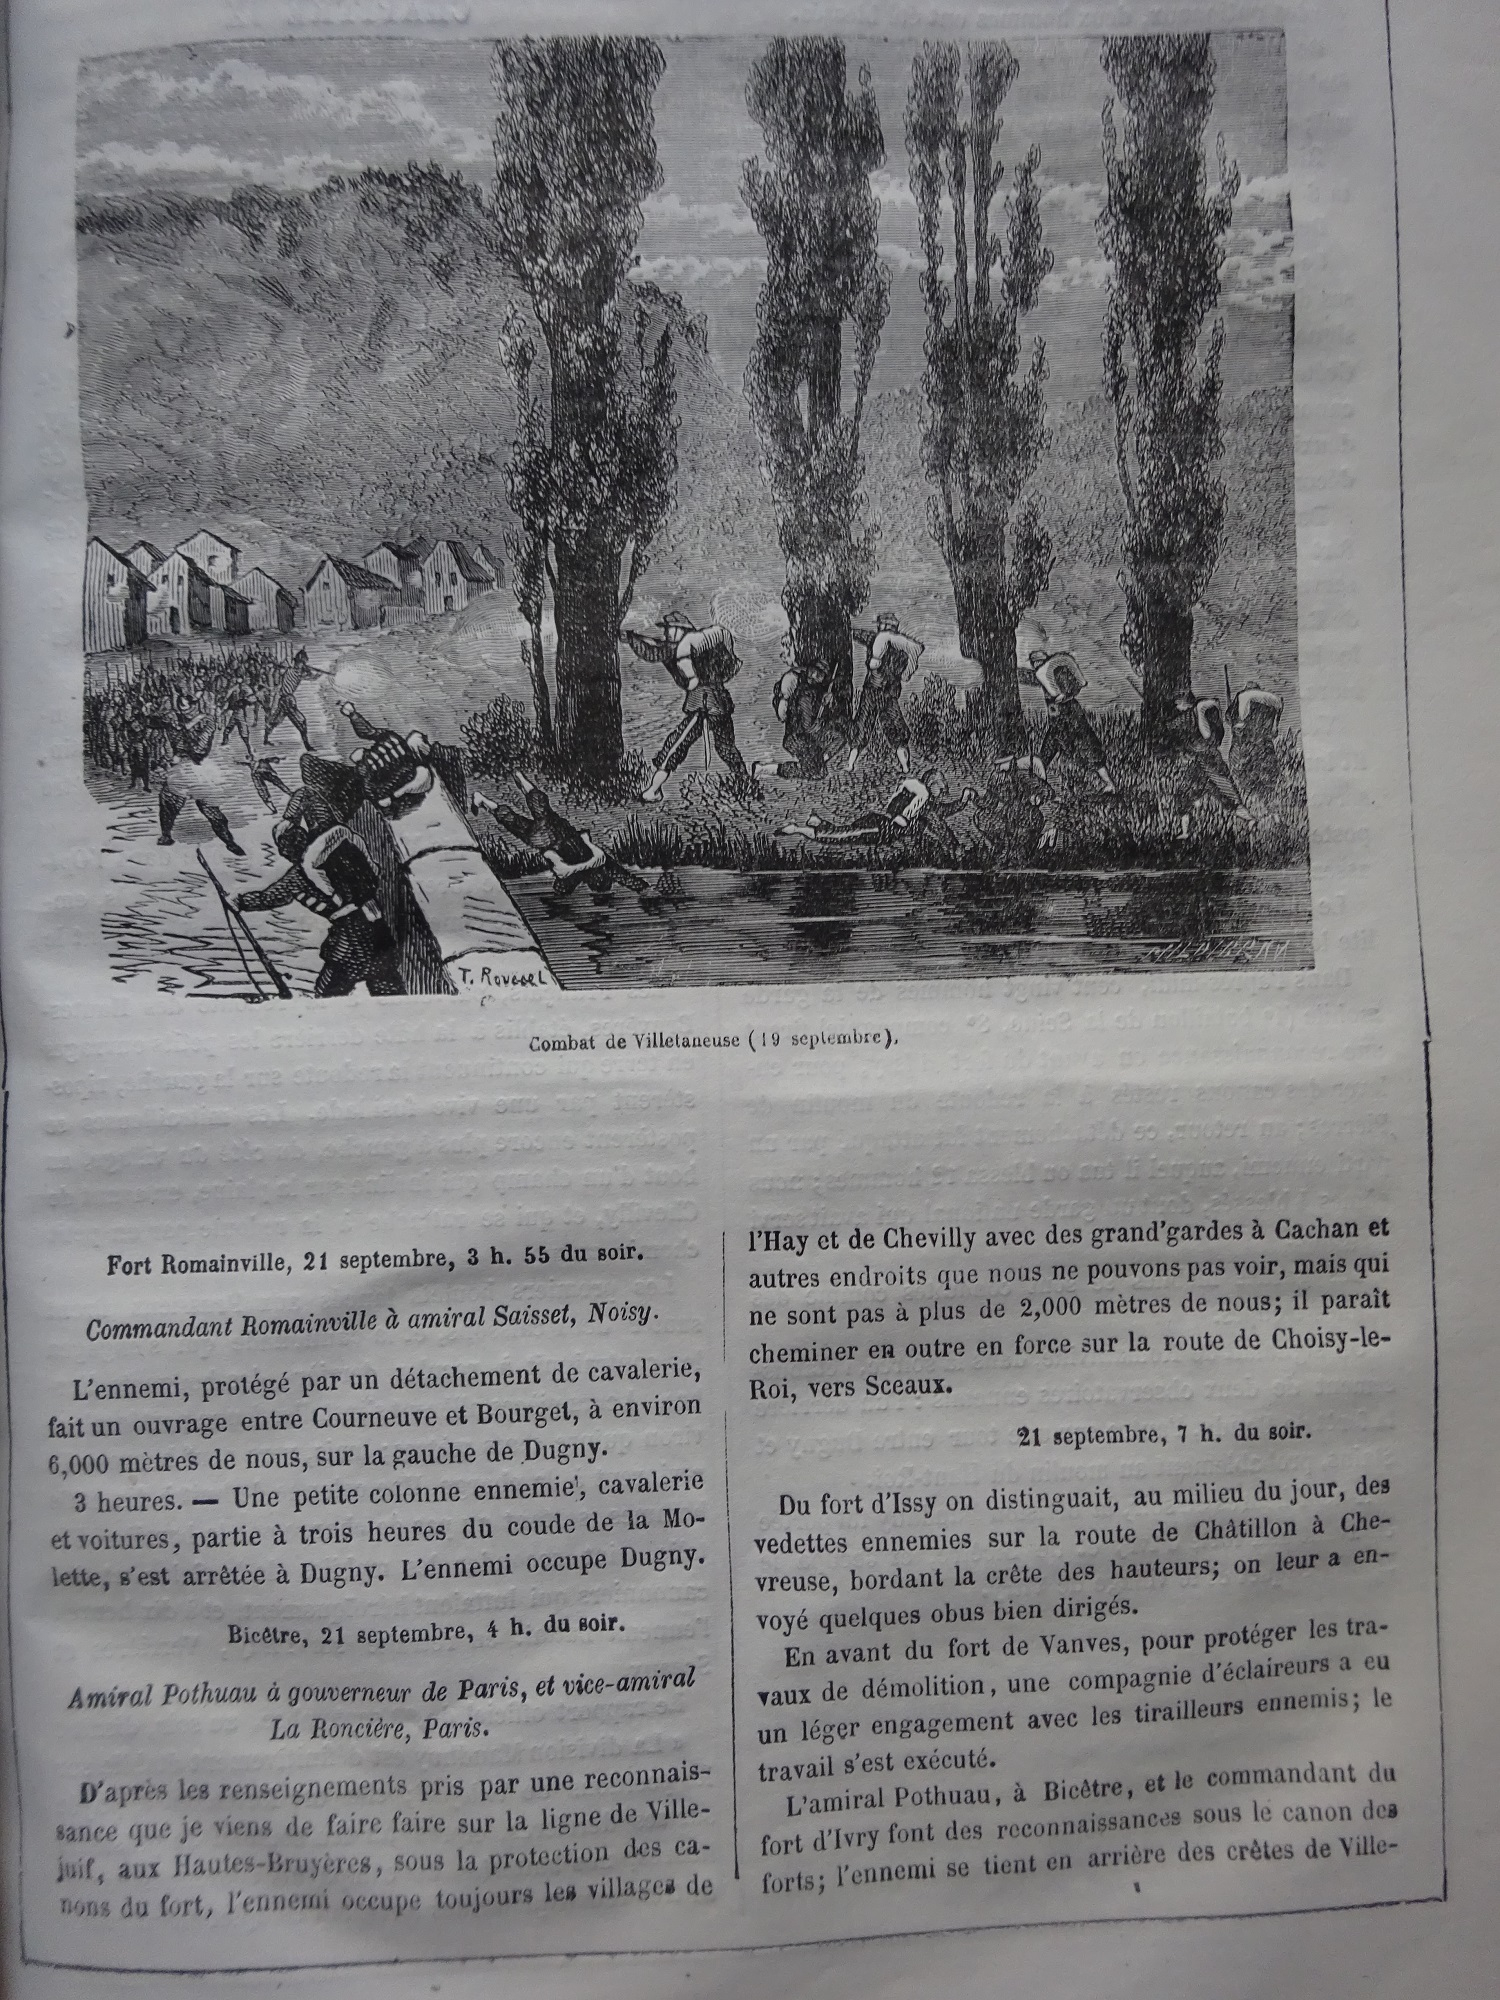 Paris incendié. Histoire de la Comune de 1871.